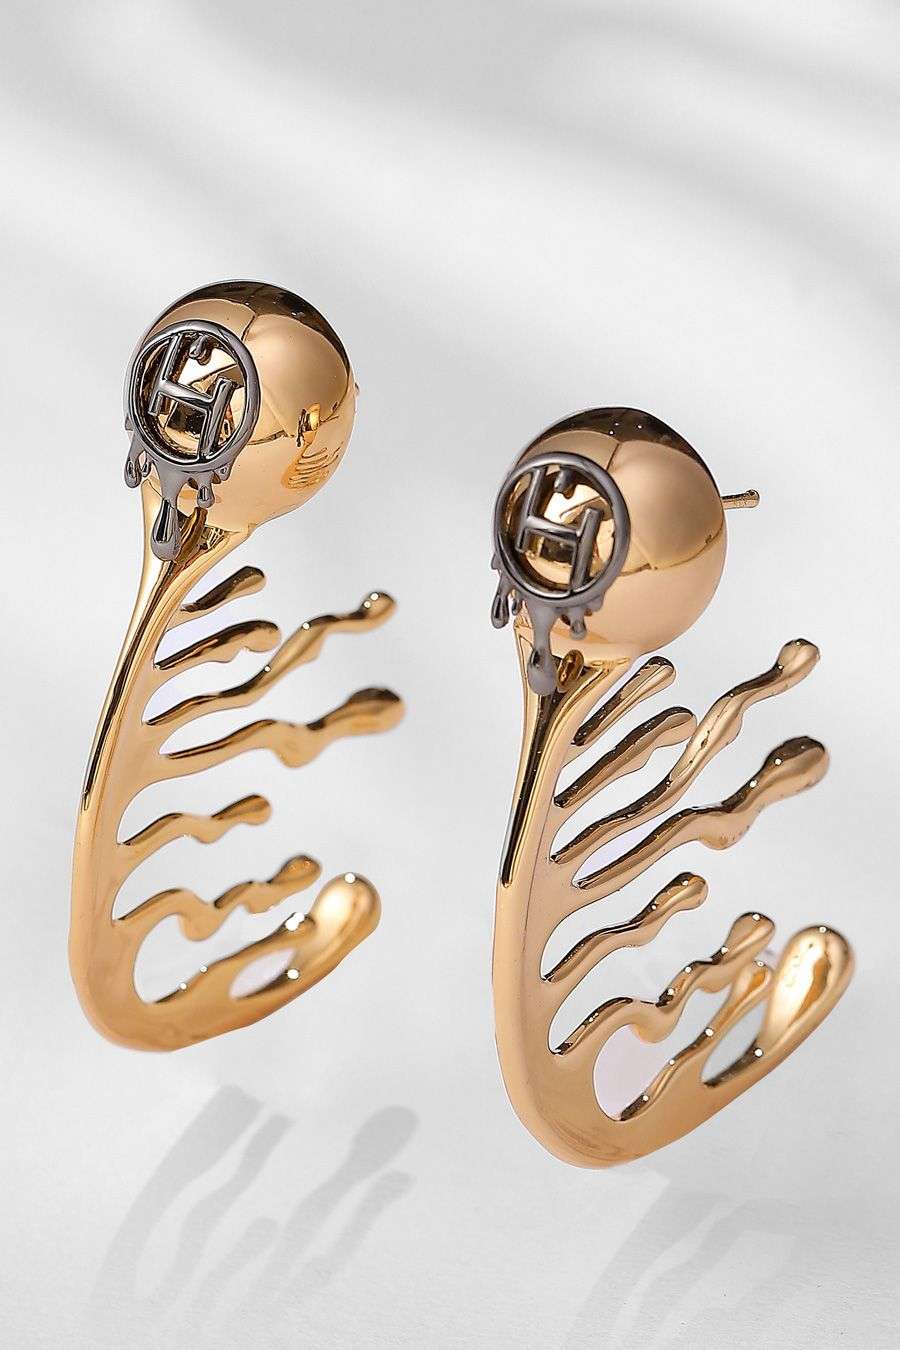 ORSA JEWELS 14 Gold 925 Sterling Silver Full CZ Huggies Earrings for Women  Dainty Hoop Half Earring Anniversary Gift SE391 - AliExpress